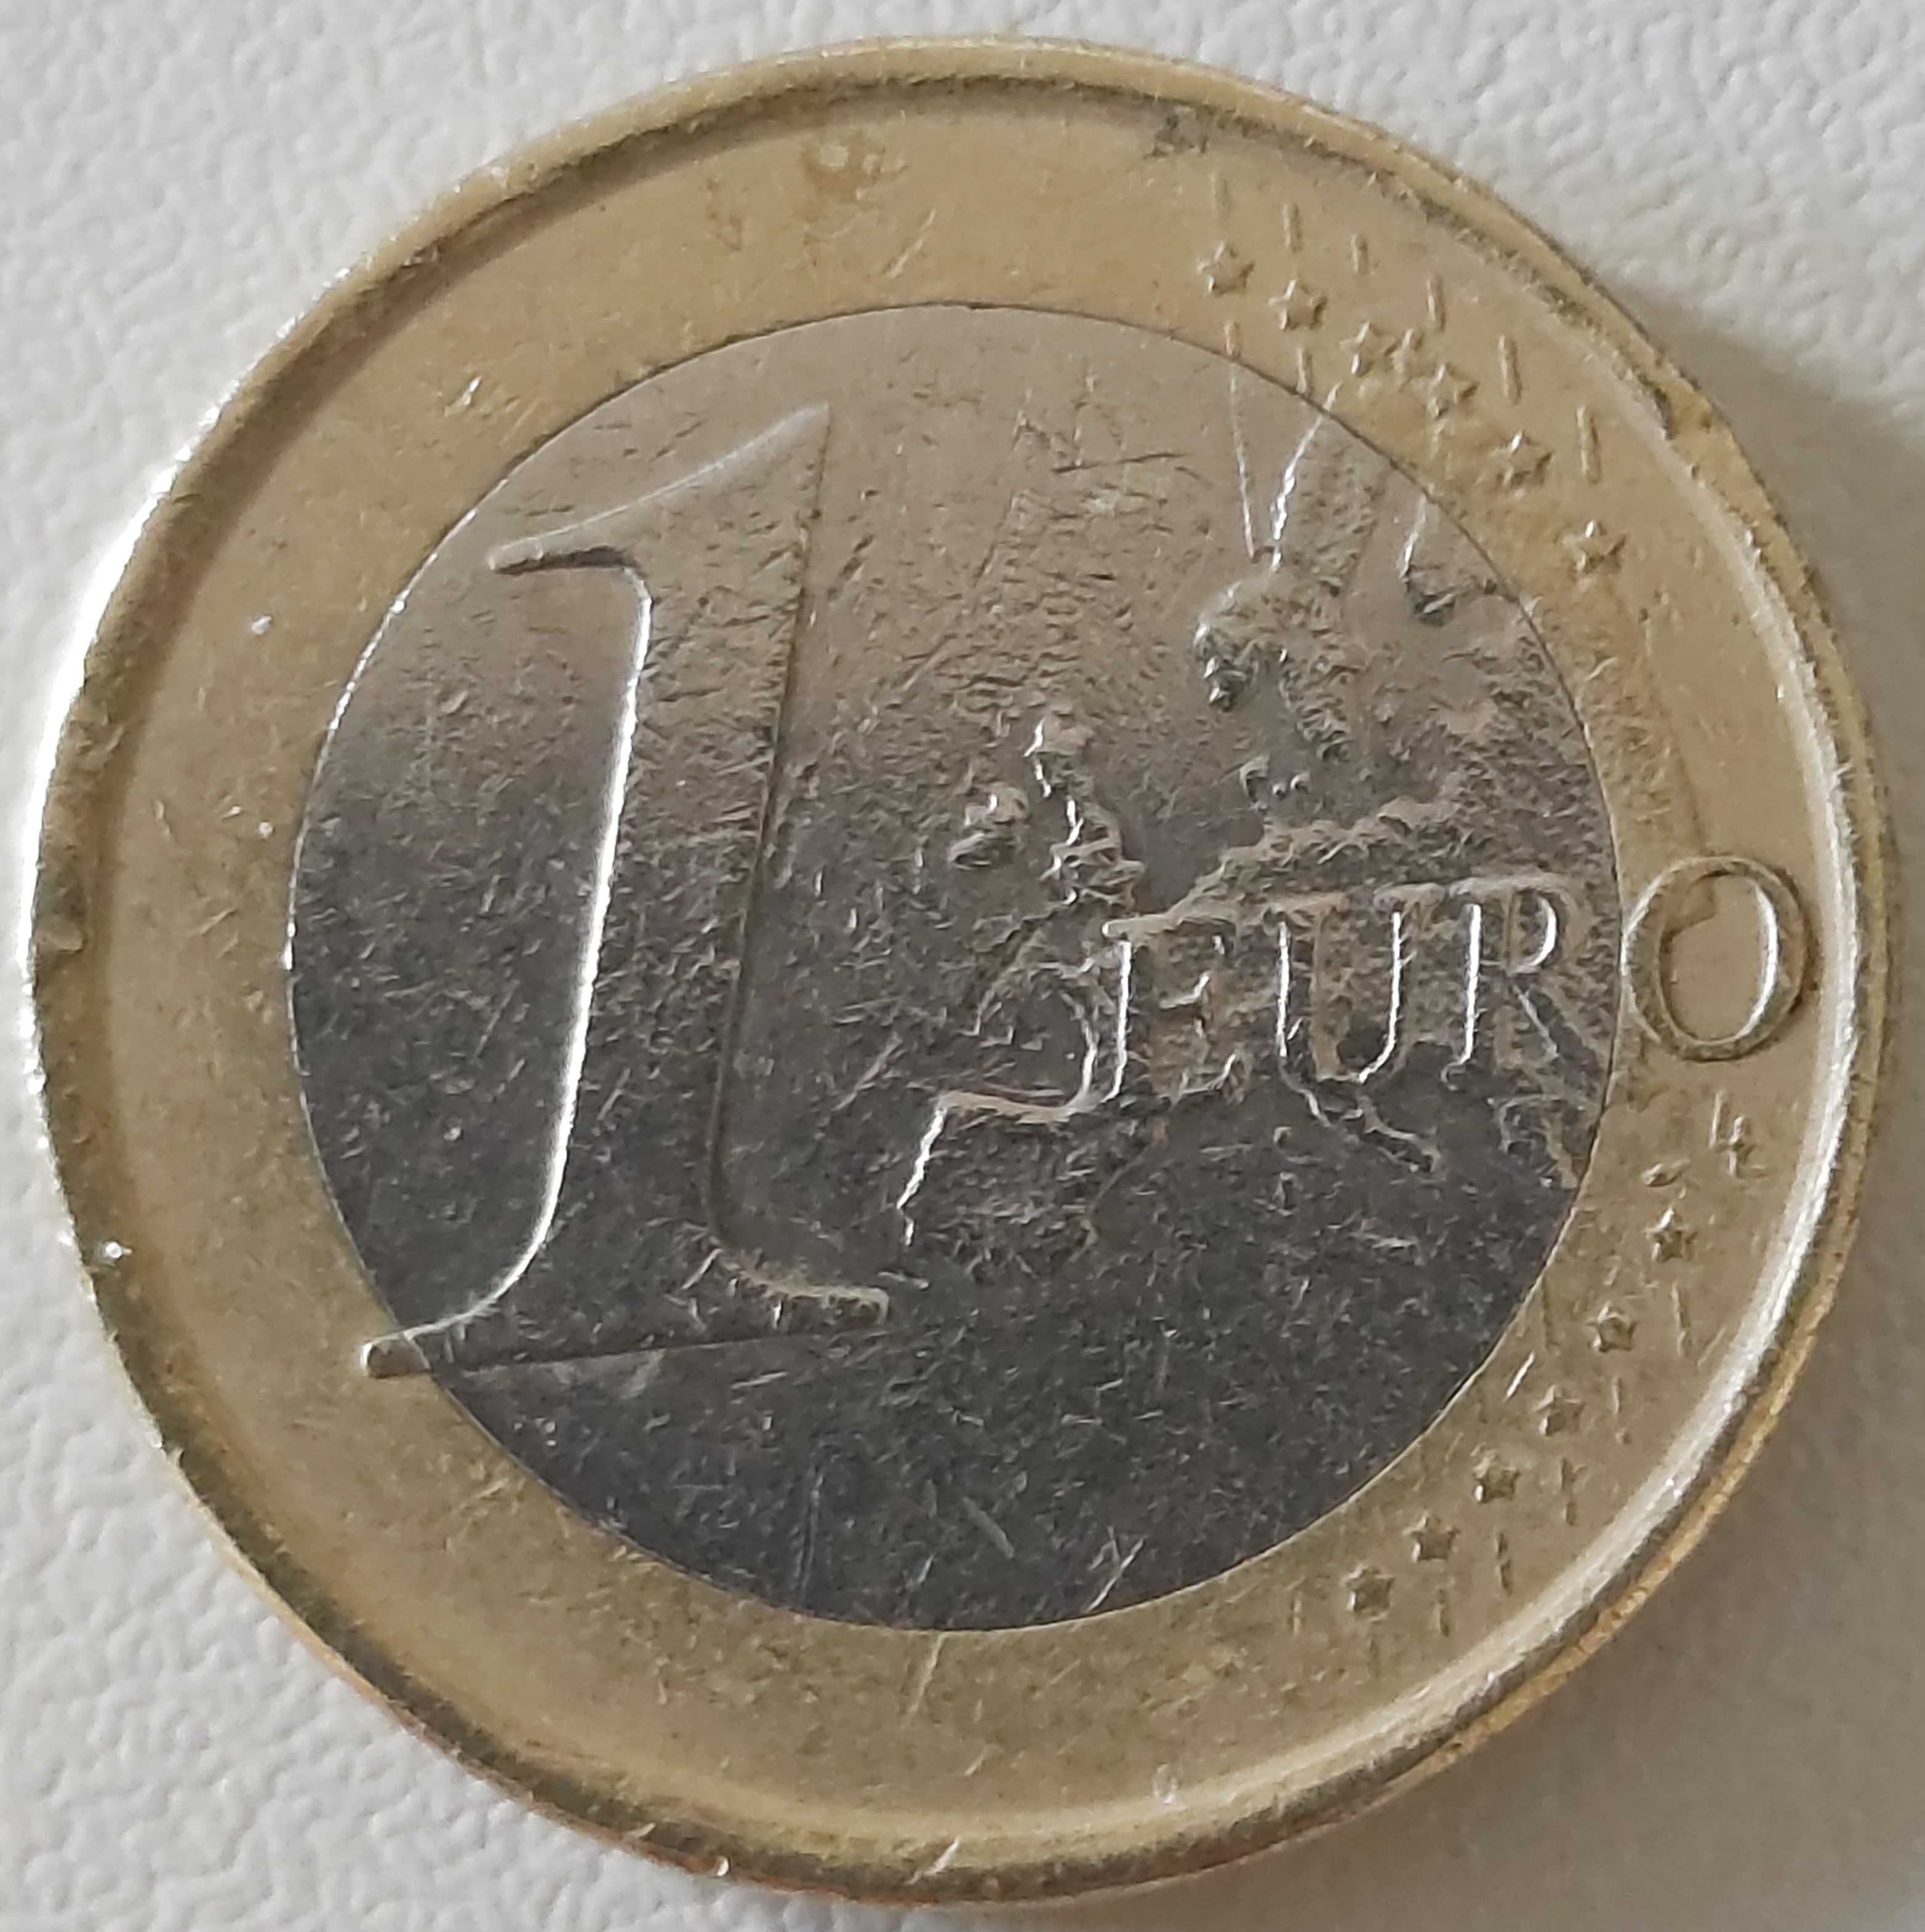 1 Euro de 2008 de Espanha, Rei Juan Carlos I